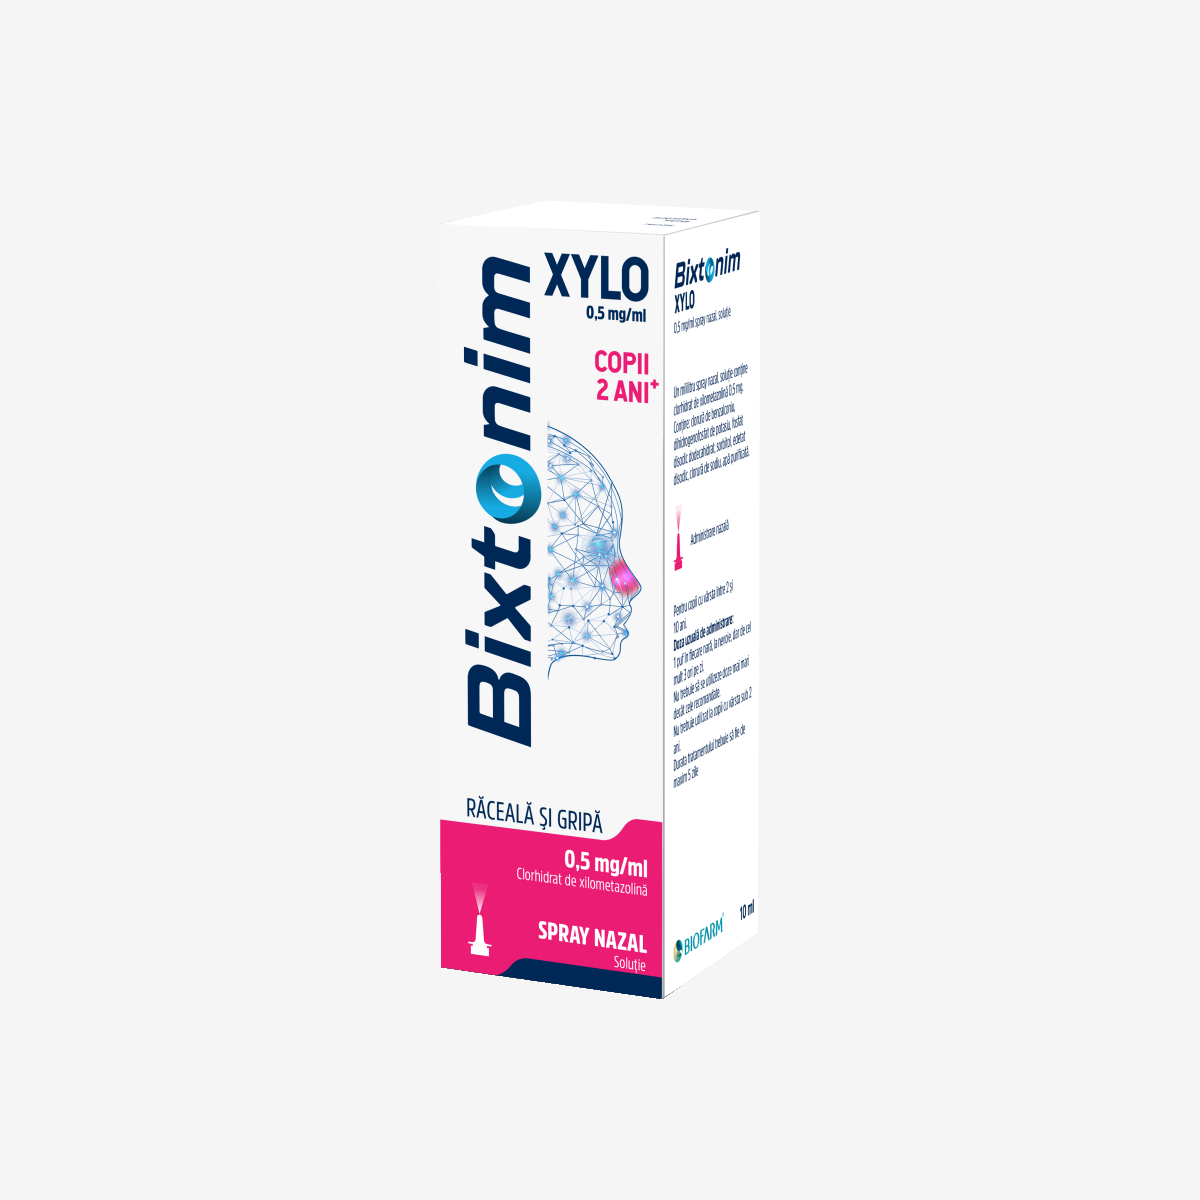 Nas infundat - Bixtonim Xylo Spray Nazal Copii, 10 ml, Biofarm, farmacieieftina.ro